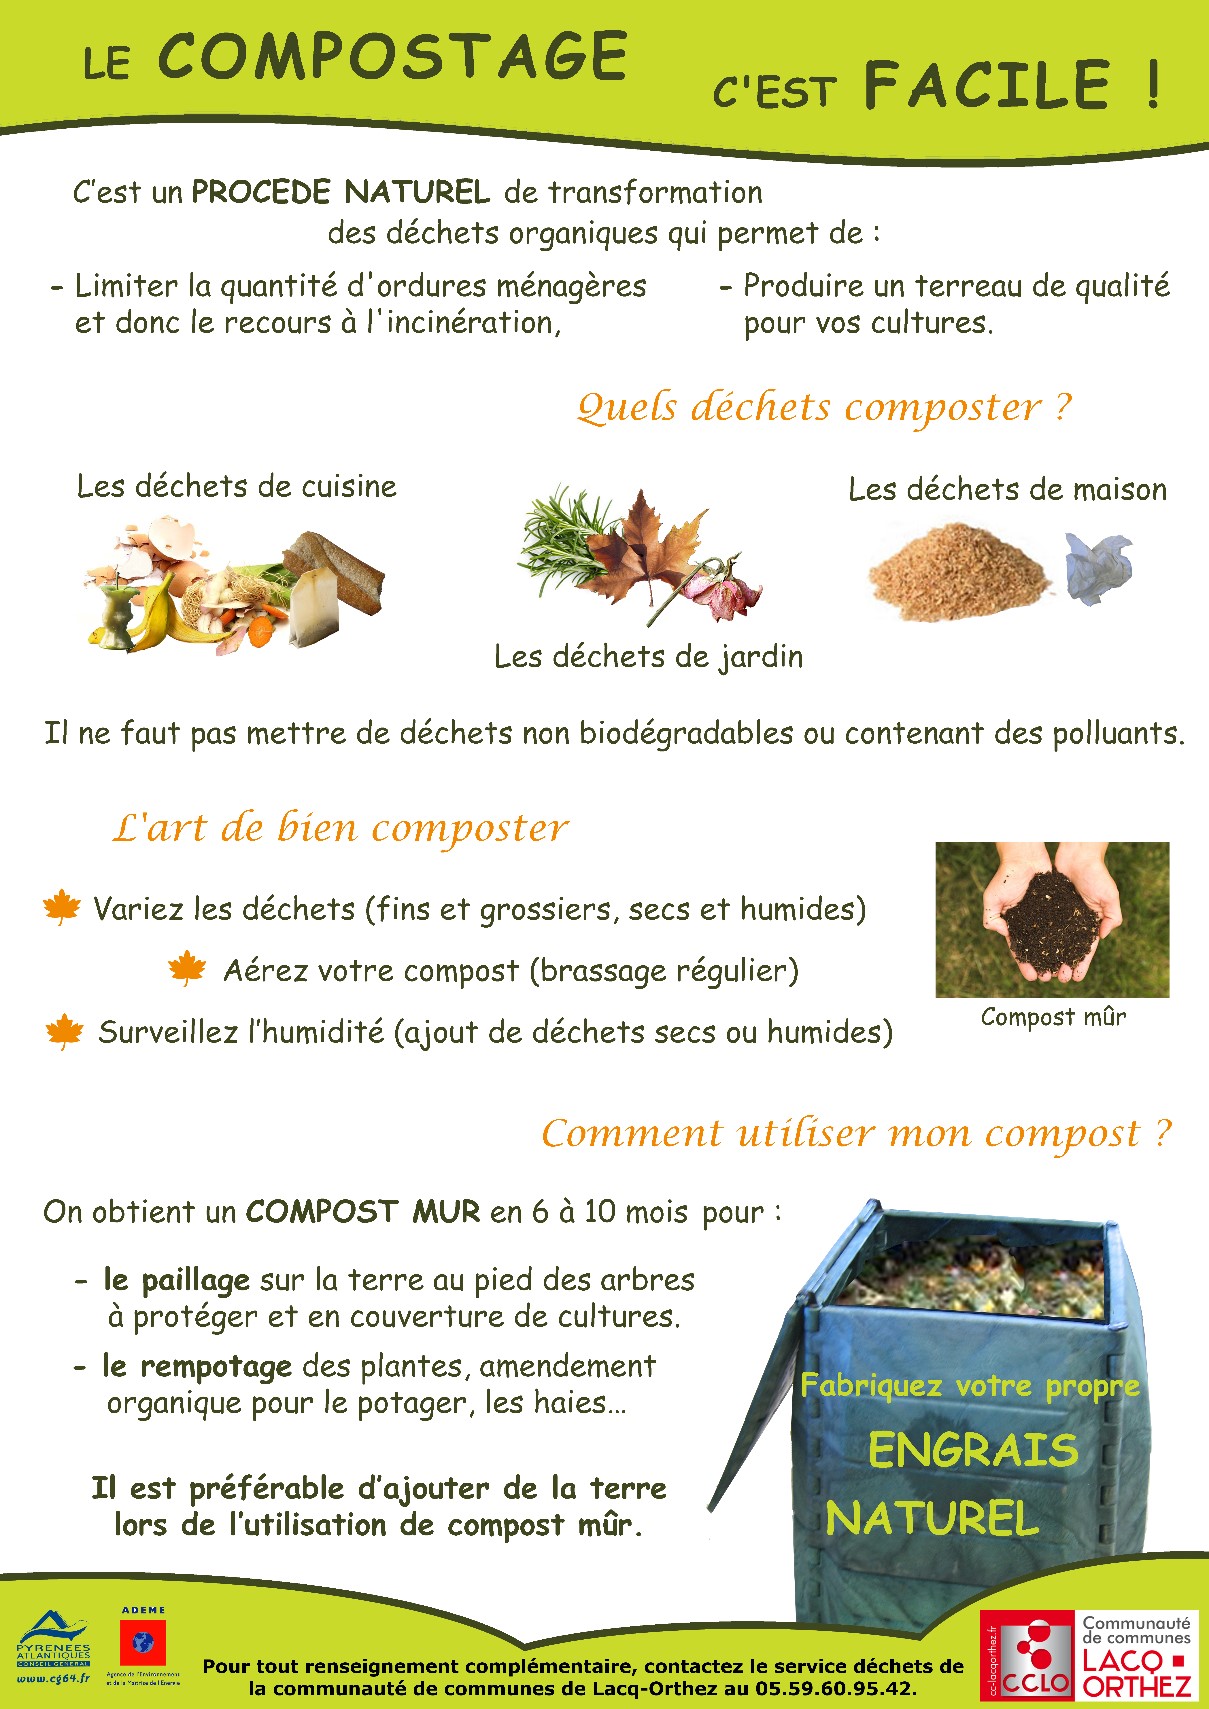 Le compostage pour alléger sa poubelle d'Ordures Ménagère • Evolis 23